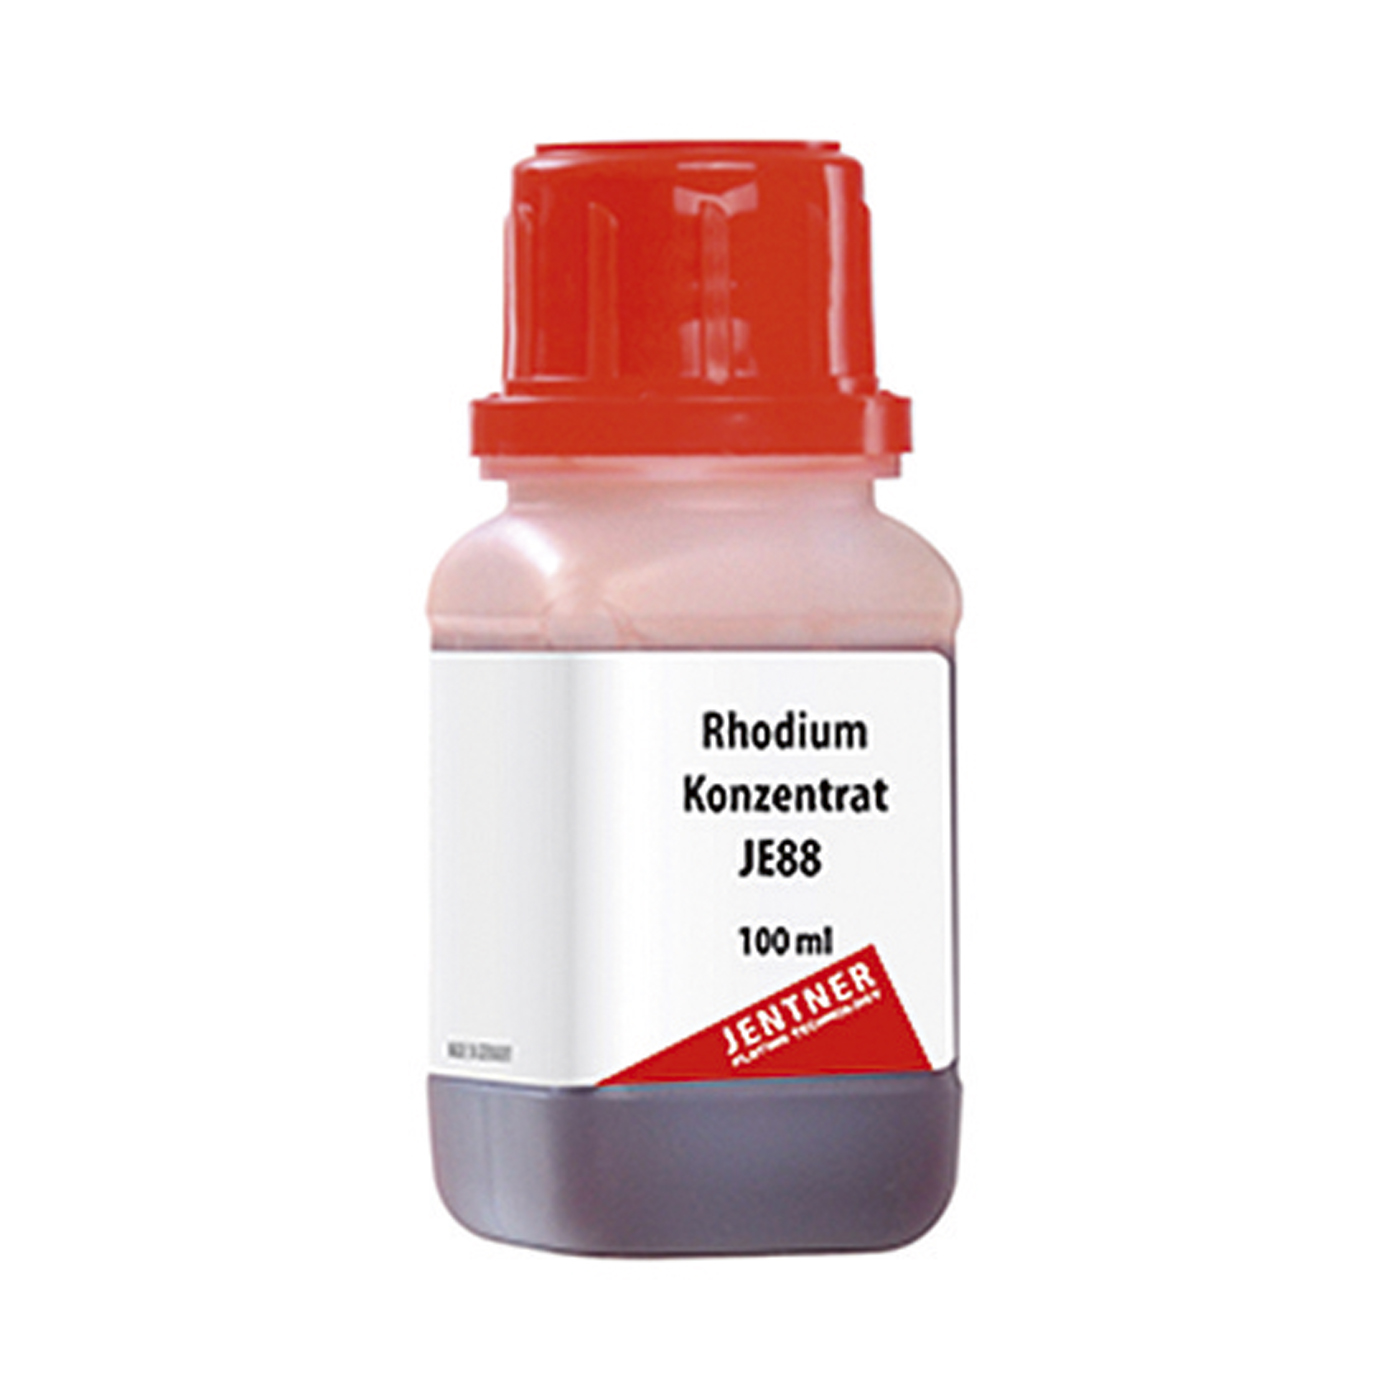 JE88 Rhodiumkonzentrat, weiß, 2g Rh, 100 g - 100 ml